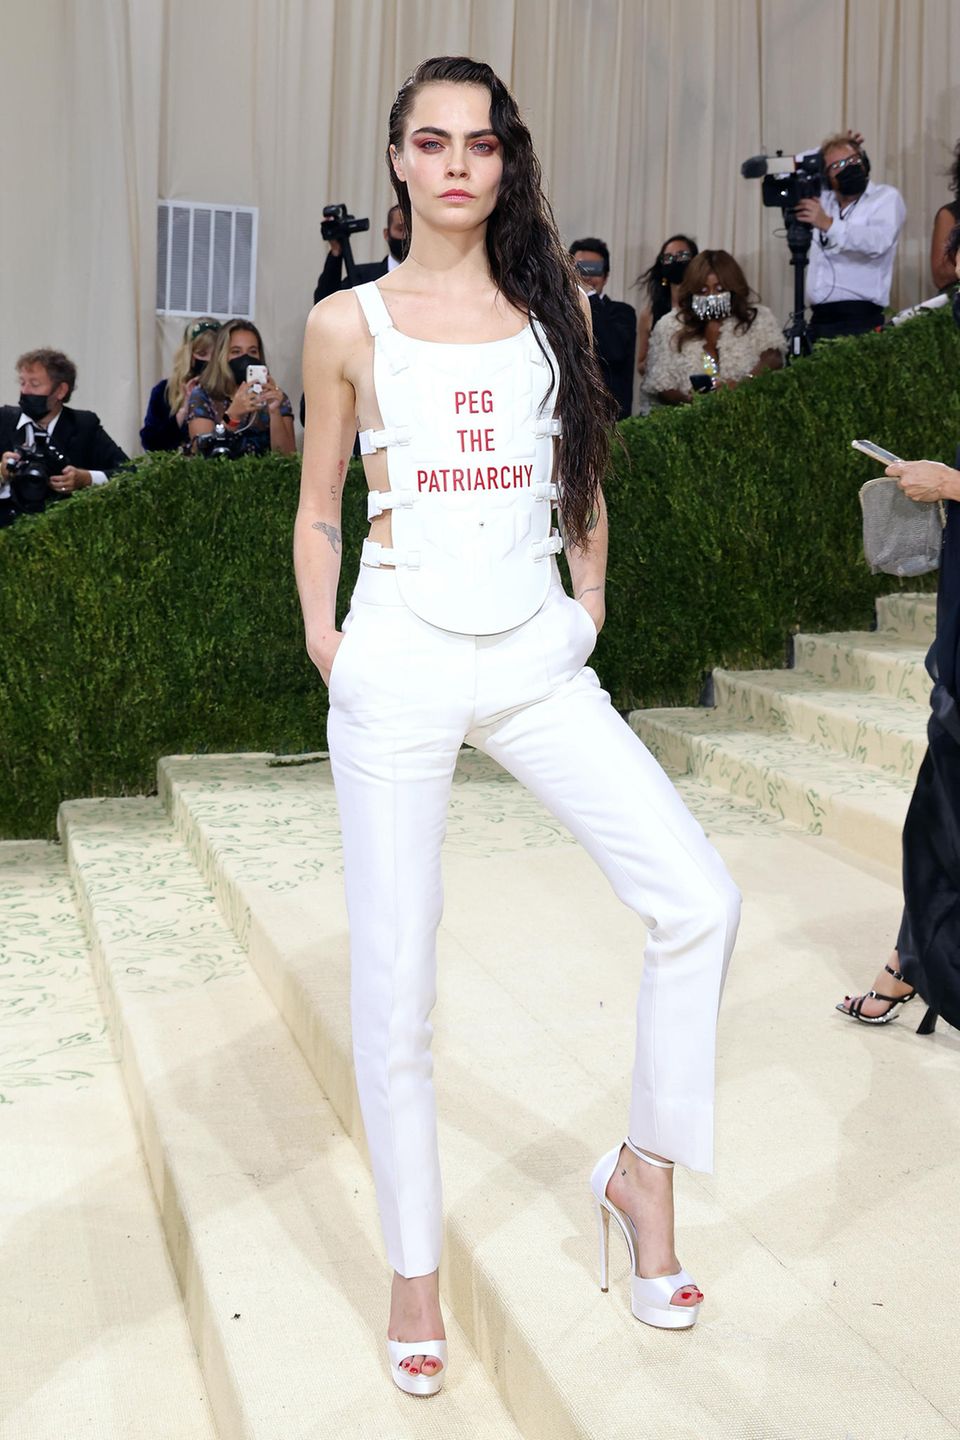 Auch Cara Delevingne nutzt die berühmten Stufen vor dem Metropolitan Museum of Art für Ansagen und setzt in ihrem weißen Dior-Look mit dem Spruch "Peg the Patriarchy" ein feministisches Statement.